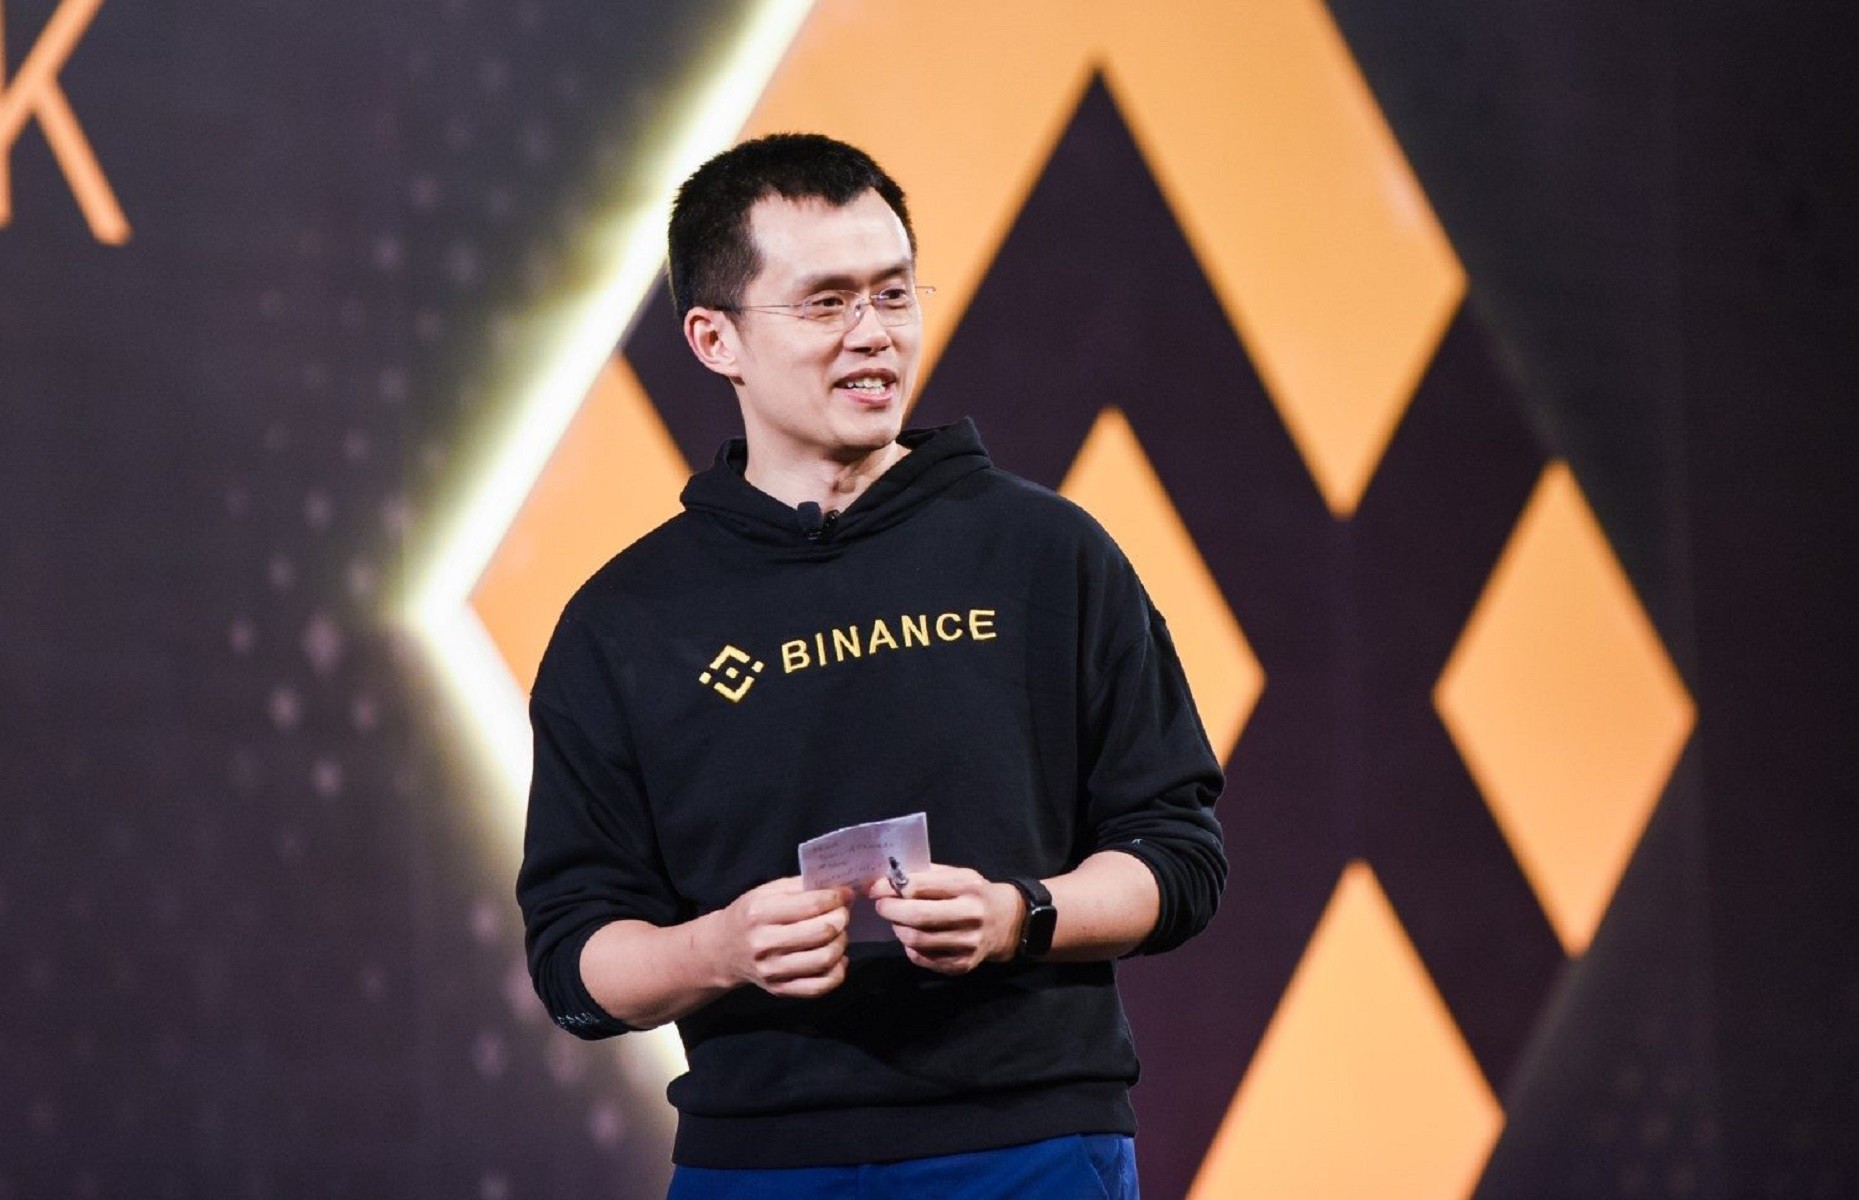 
Người đàn ông tên Changpeng Zhao lần đầu tiên tiếp xúc với Bitcoin vào năm 2013, anh đã gia nhập vào Blockchain.info (thường được gọi với cái tên Blockchain) - nơi mà anh làm việc cùng với Roger Vẻ và Ben Reeves
